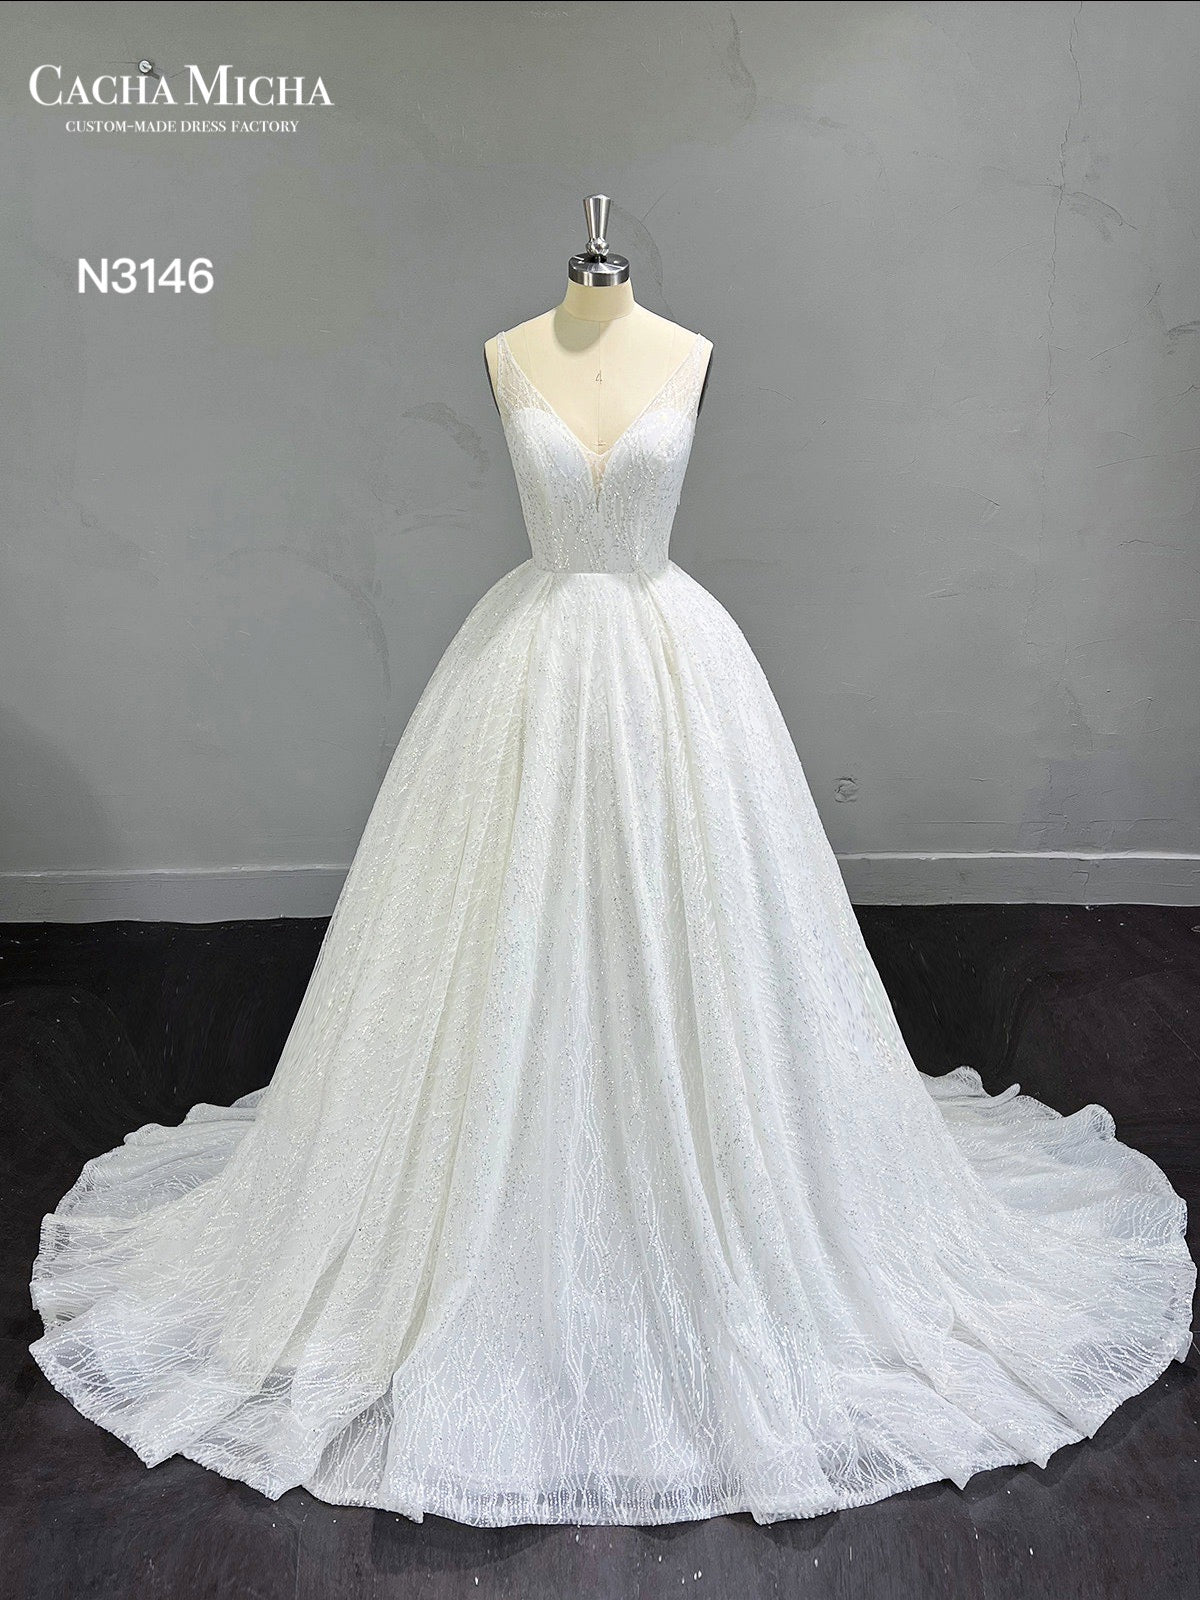 Stunning Glitter Ball Gown Wedding Dress N3146